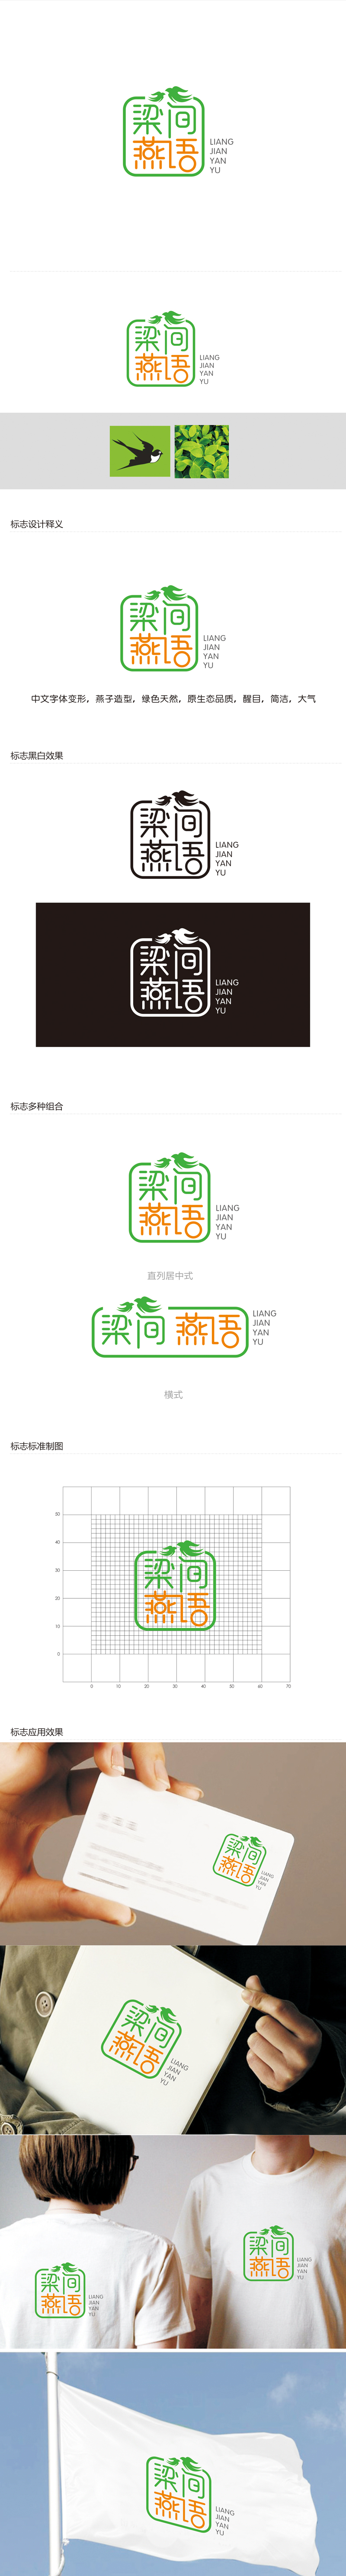 赵鹏的梁间燕语食品销售logo设计